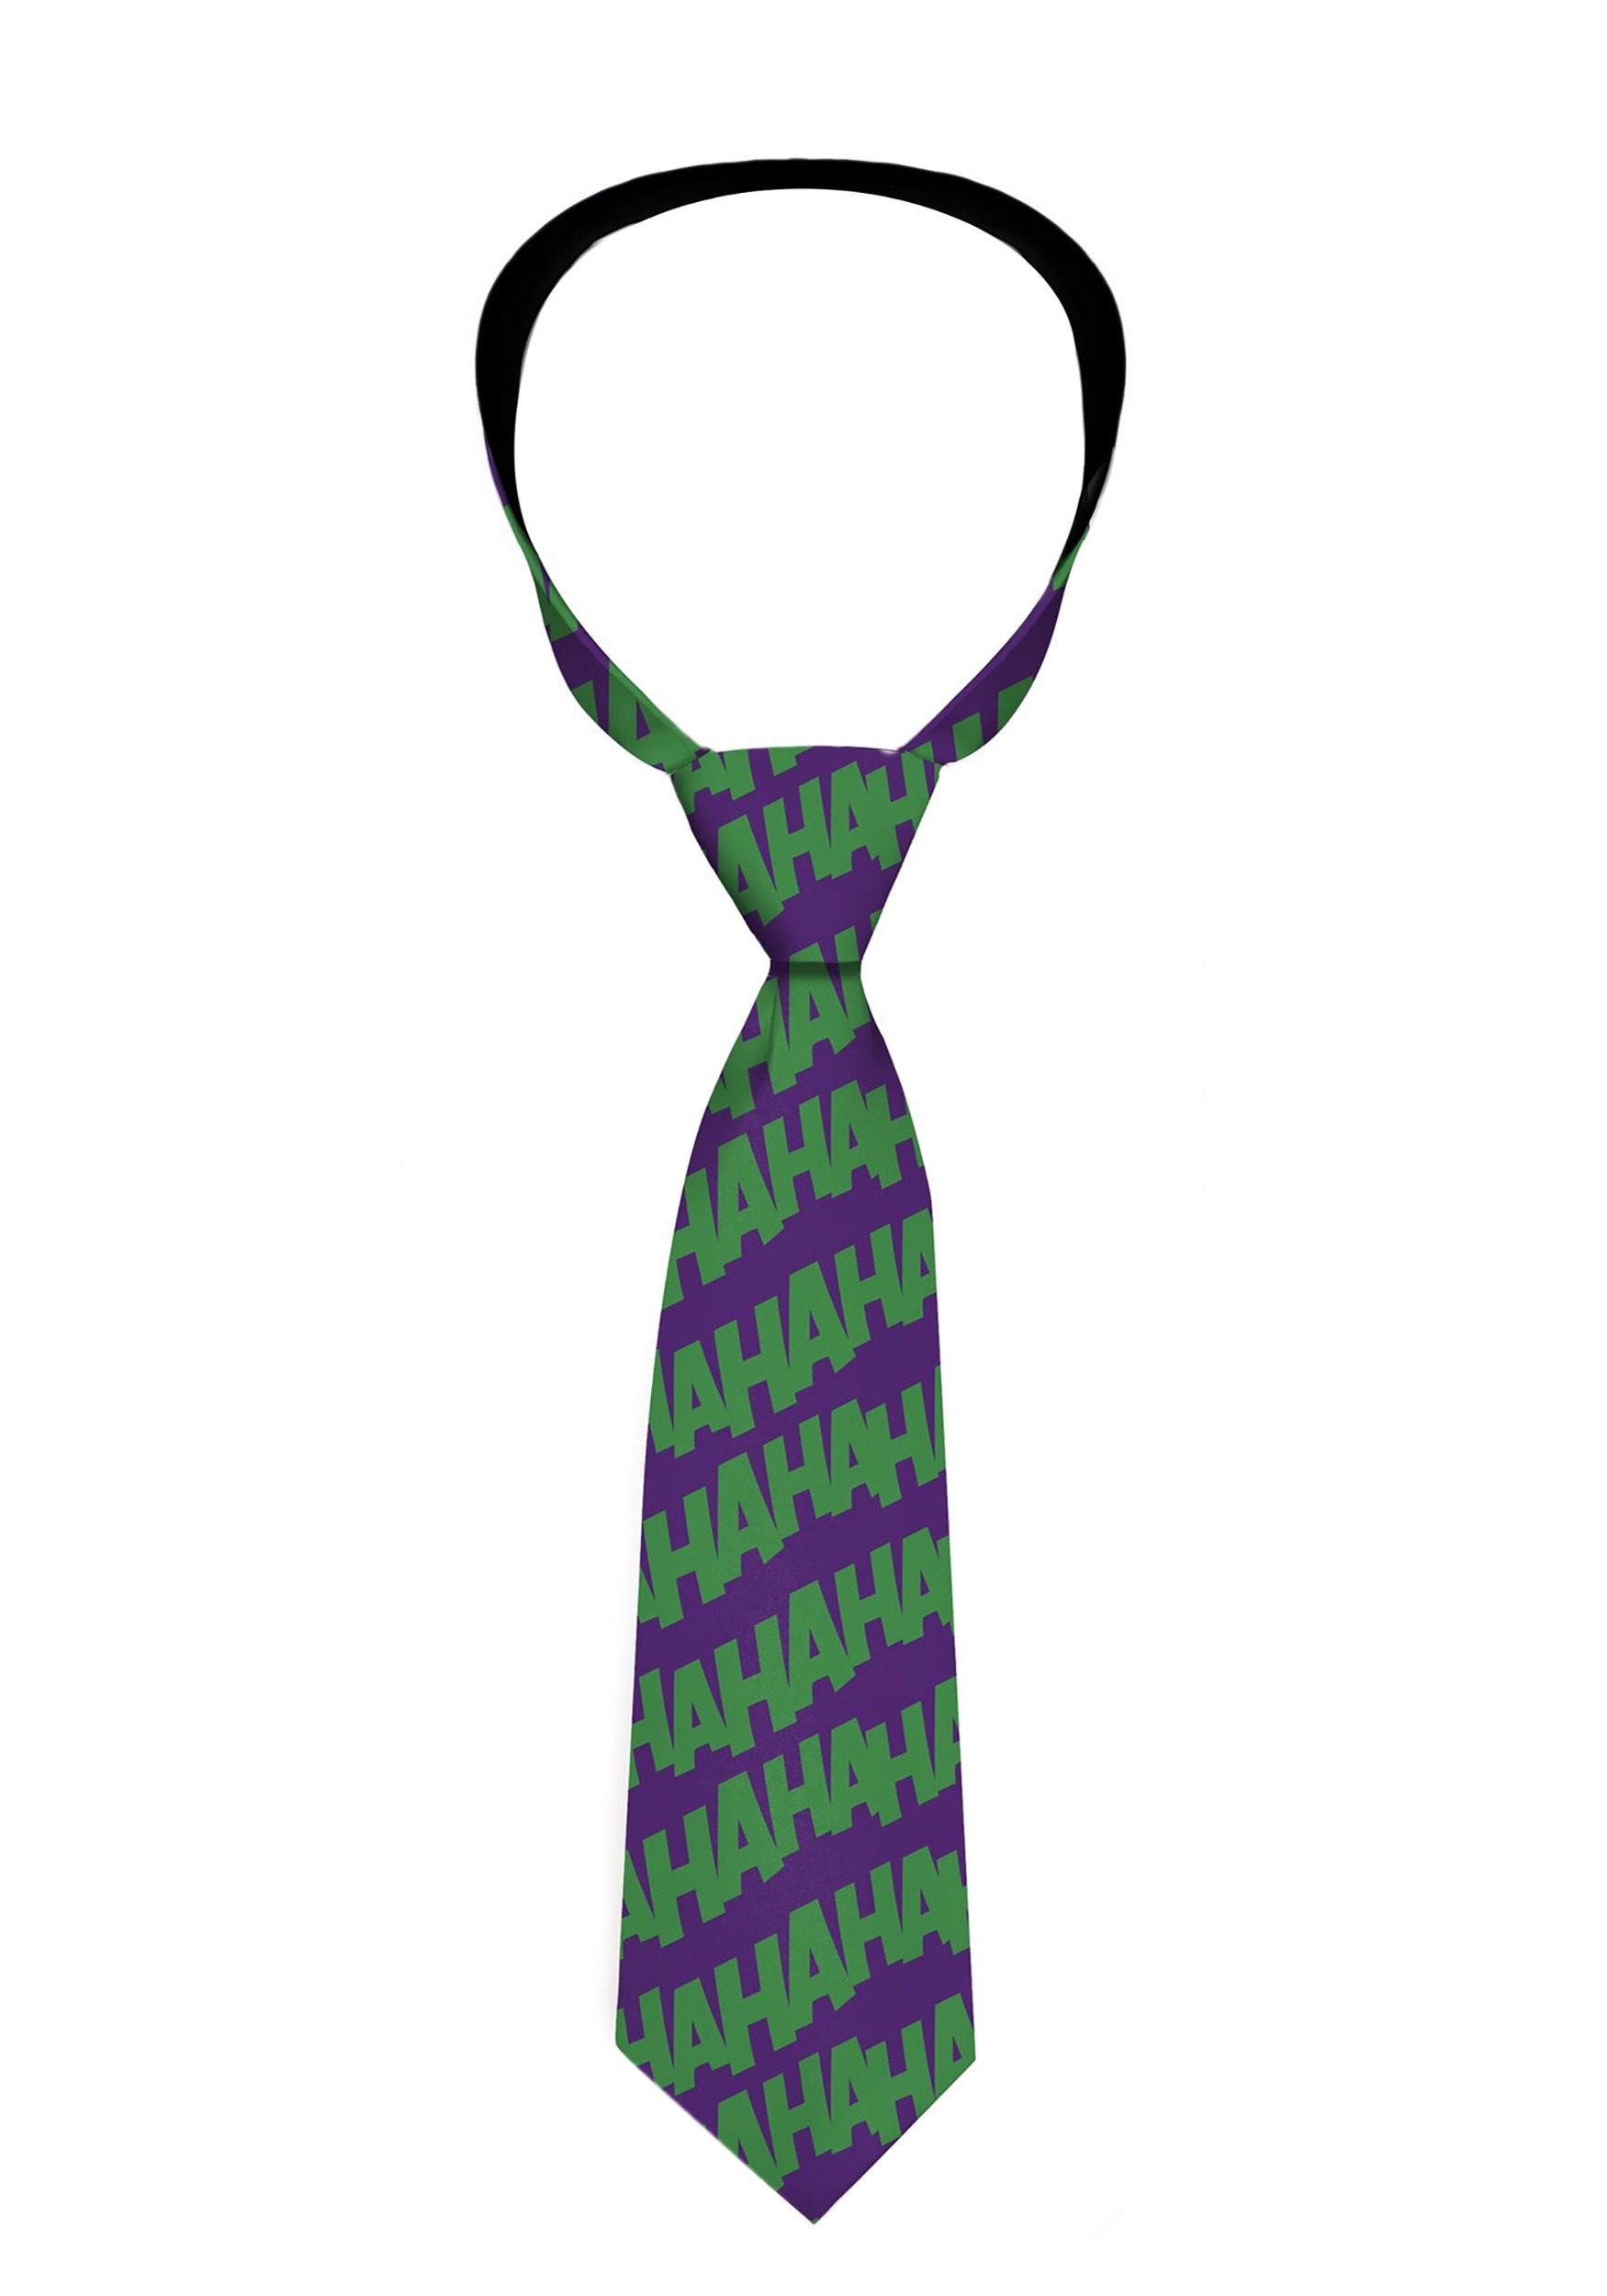 The Joker HaHaHa Tie